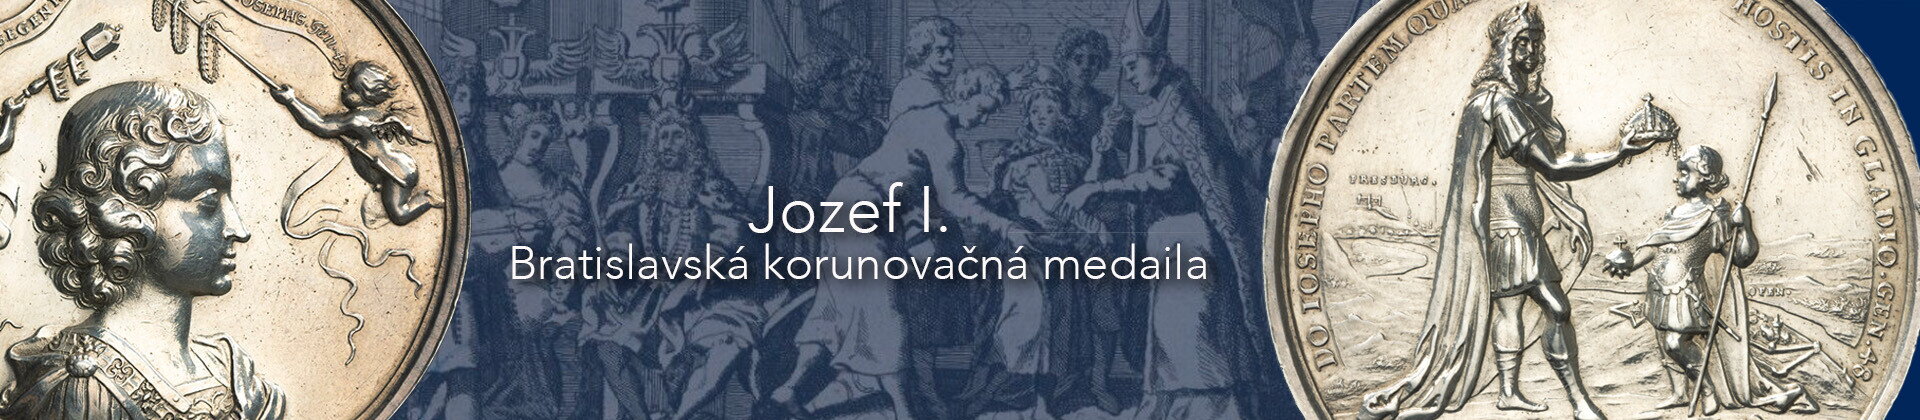 Jozef I. - Bratislavská korunovačná medaila 1687